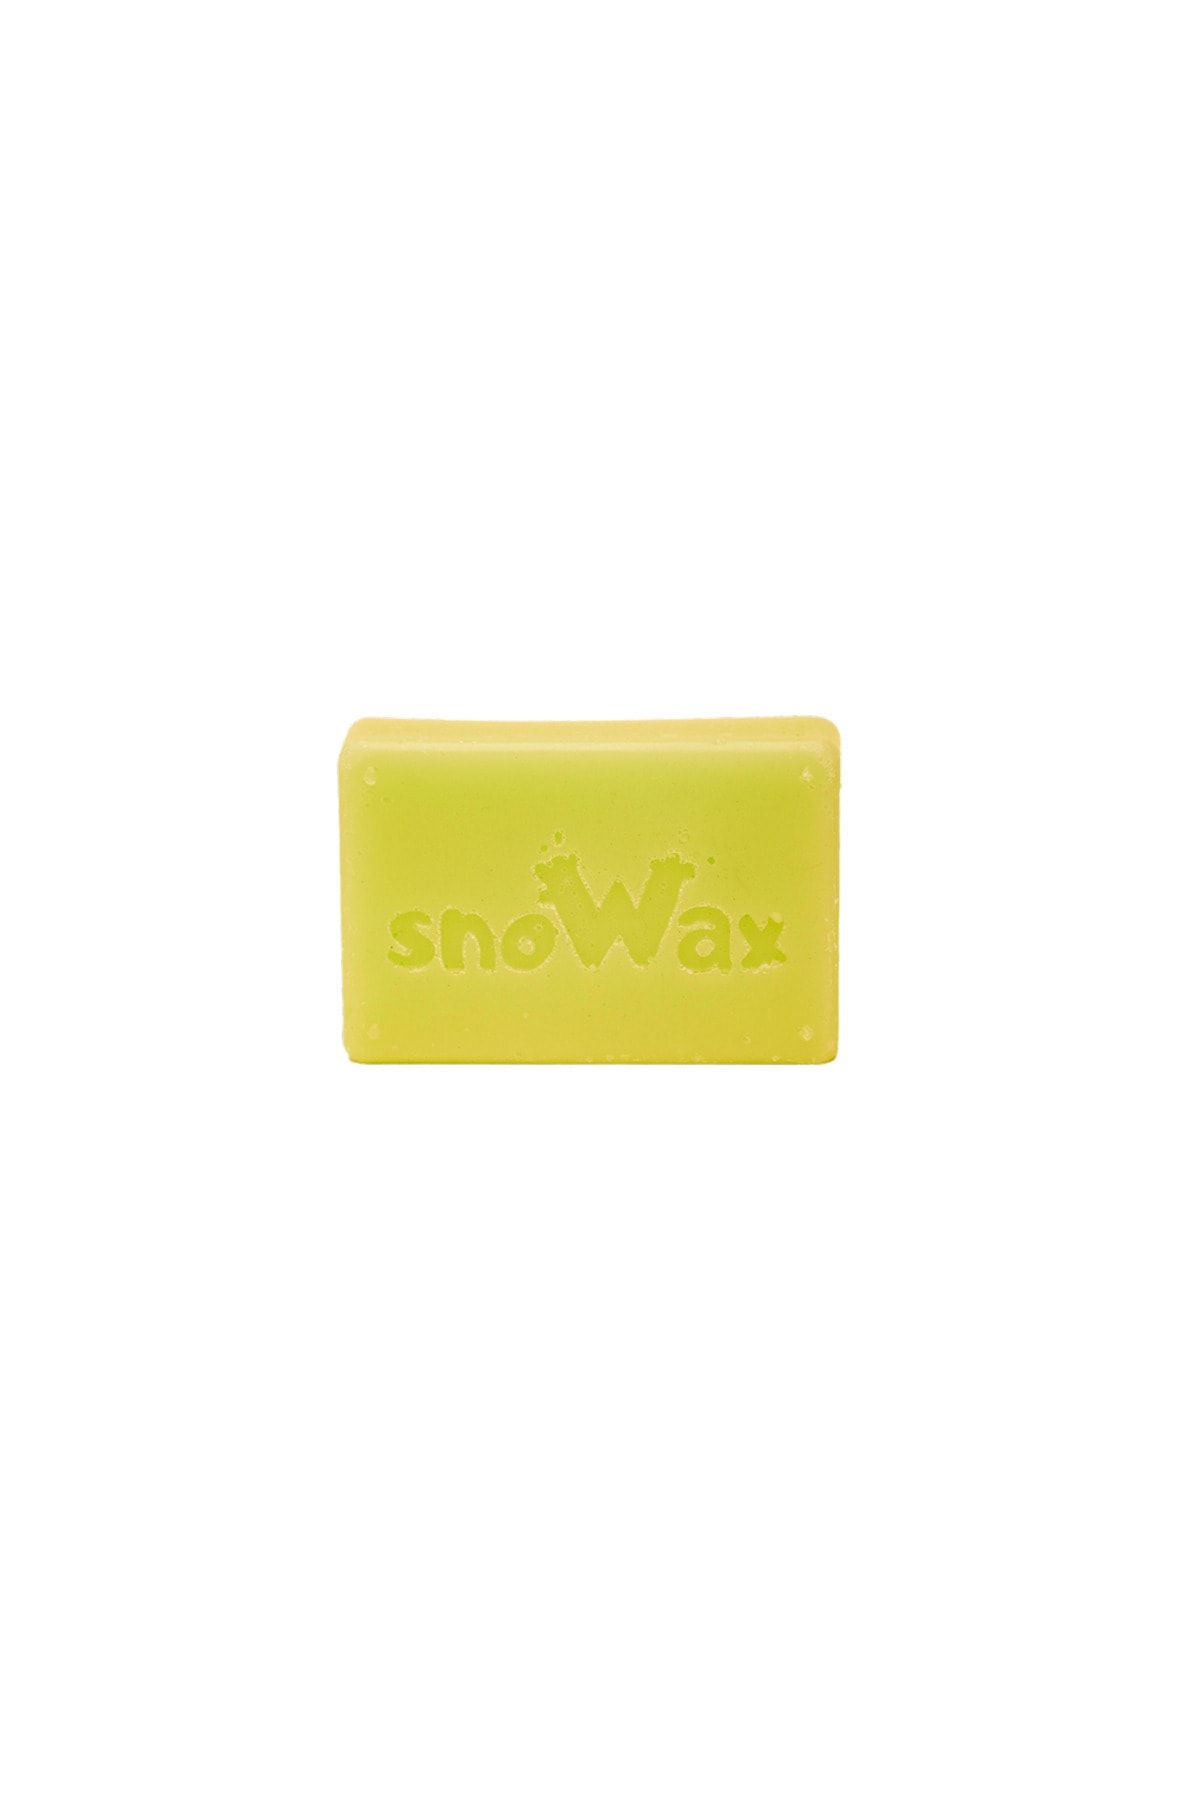 SNOWAX Skiwax, Snowboard Ve Kayak Için Wax, Sıcak Wax, Sıcak Uygulama